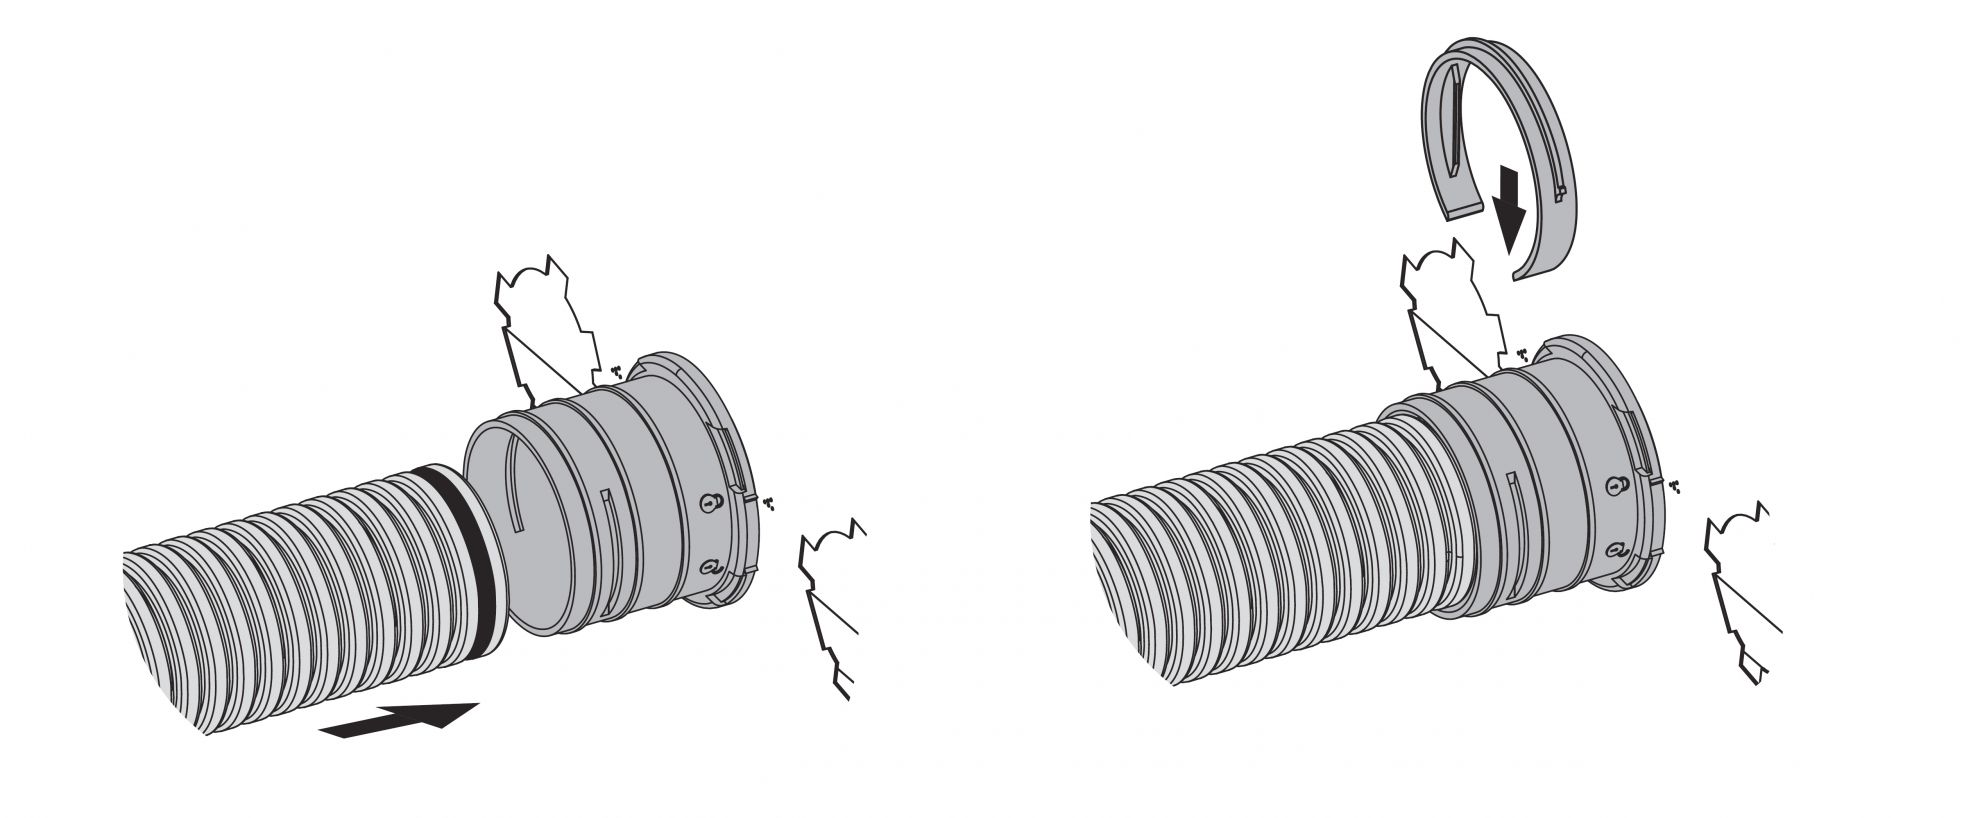 Skrzynka rozprężna służy do połączenia klasycznego kanału wentylacyjnego o średnicy 200 mm z kanałowym systemem wentylacyjnym Flexitech Ø 63 mm